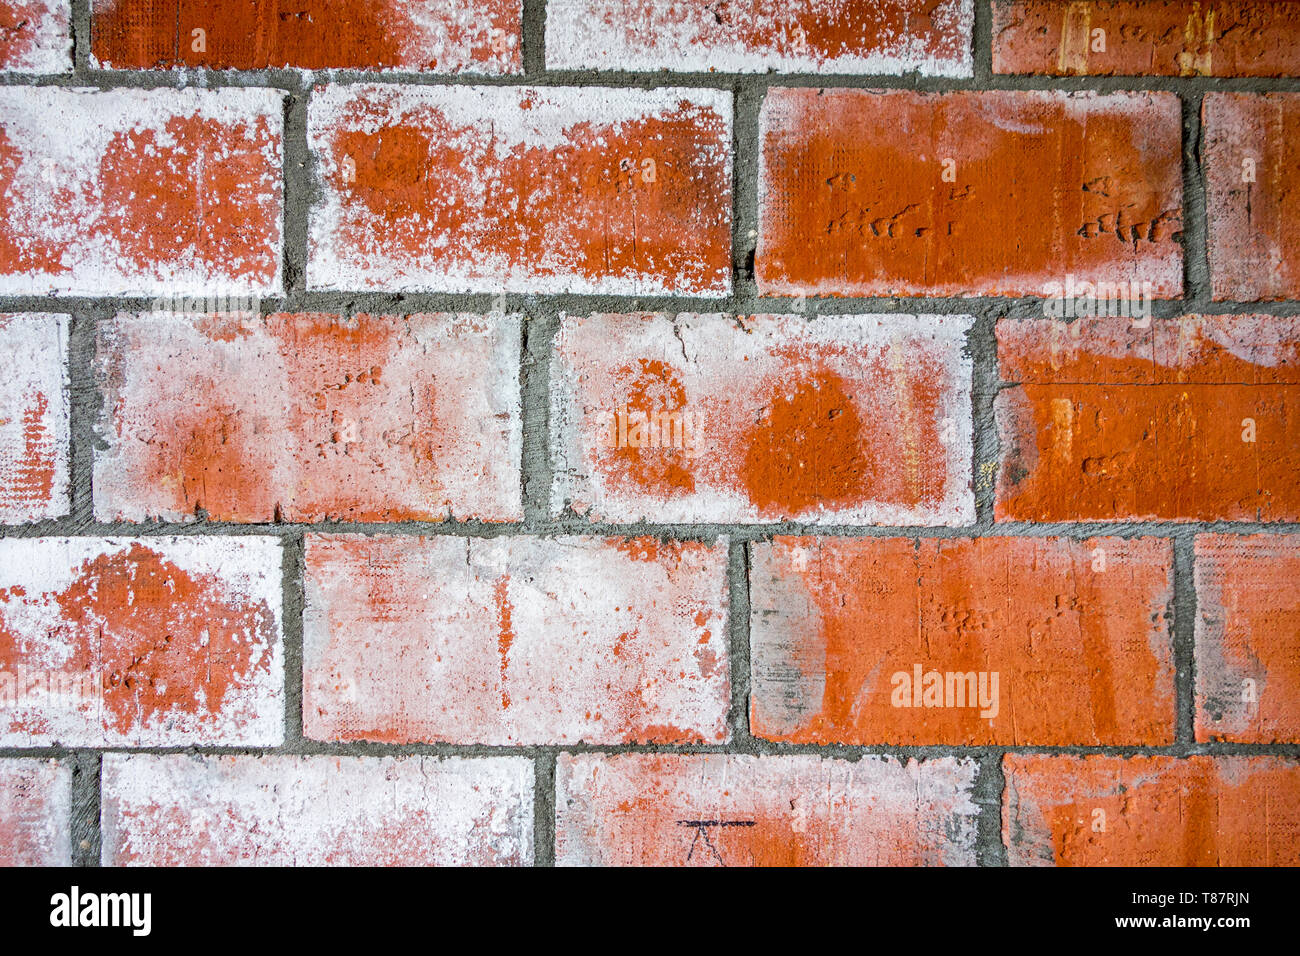 Mur de brique rouge de maison nouvellement construite montrant les taches blanc revêtement / en raison de l'efflorescence, la migration de sel à la surface d'un matériau poreux Banque D'Images